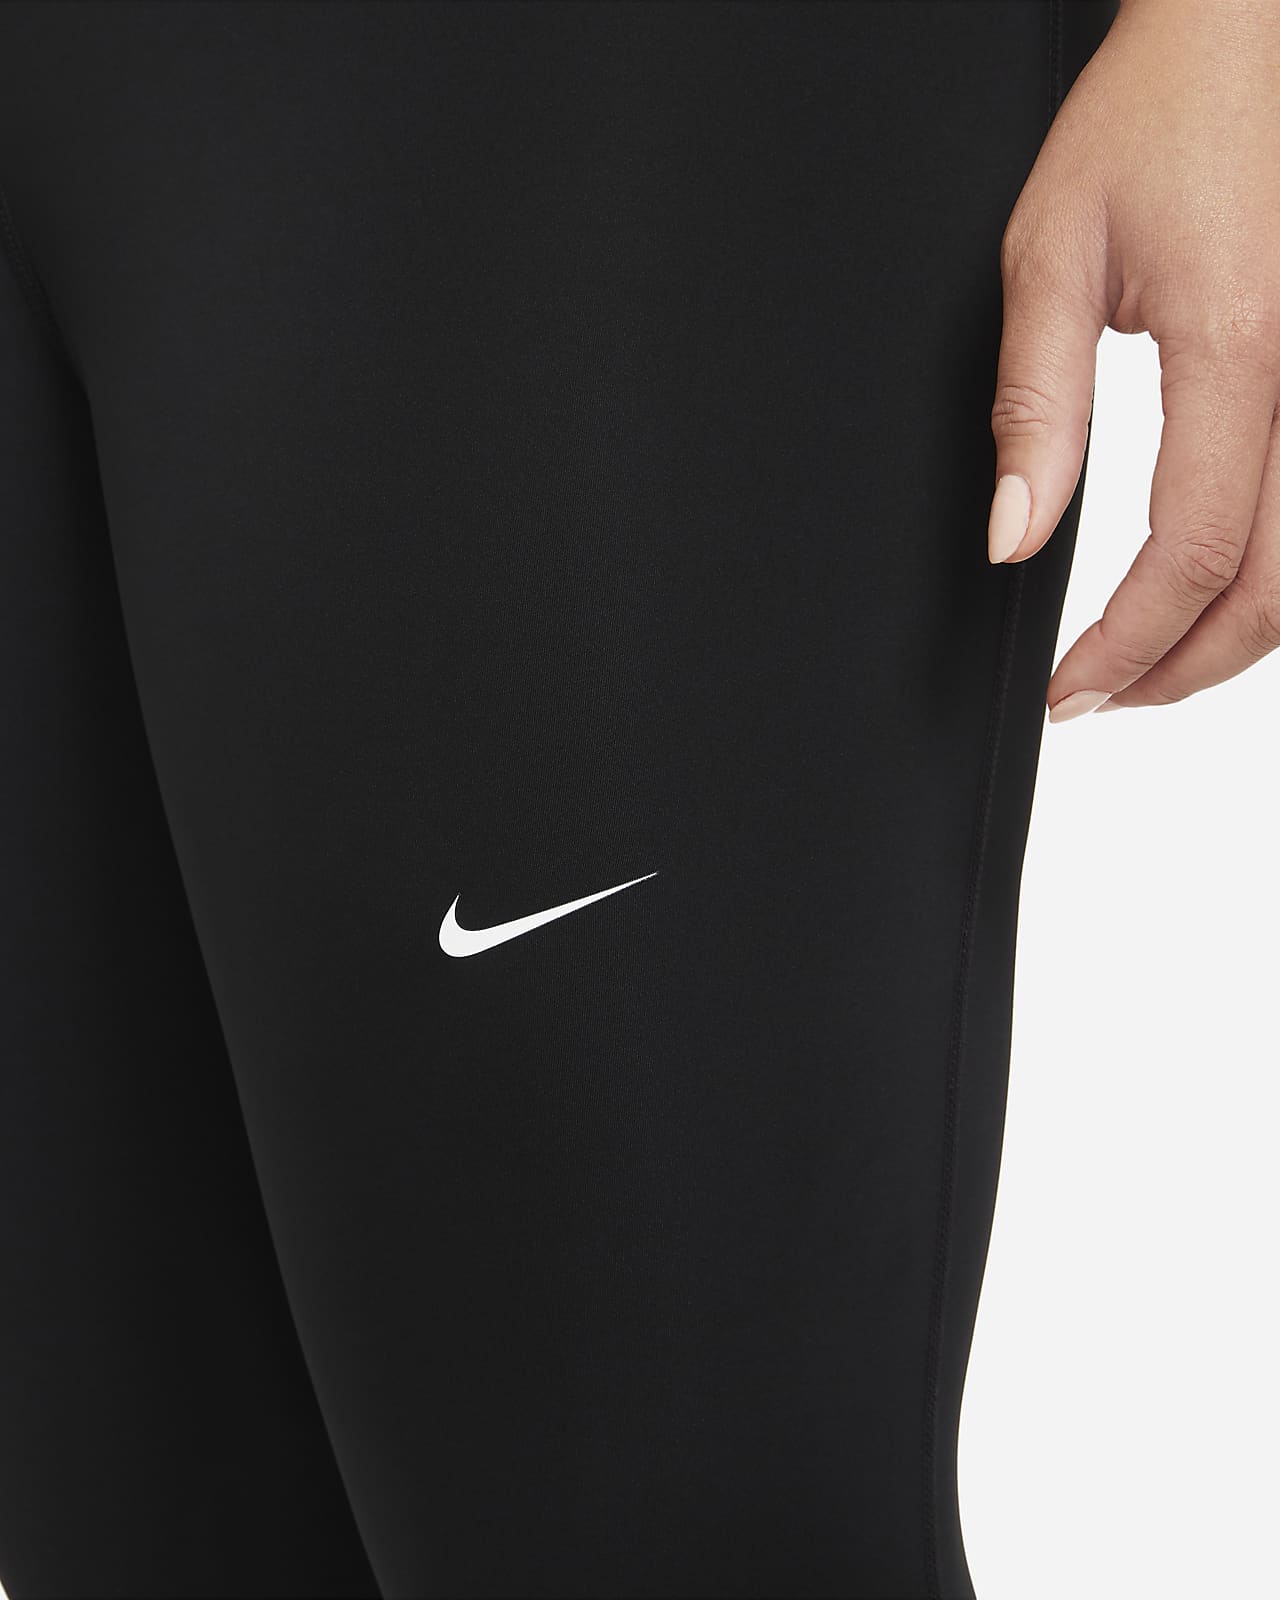 Nike Pro Dri Fit Leggings Size Medium -  Singapore